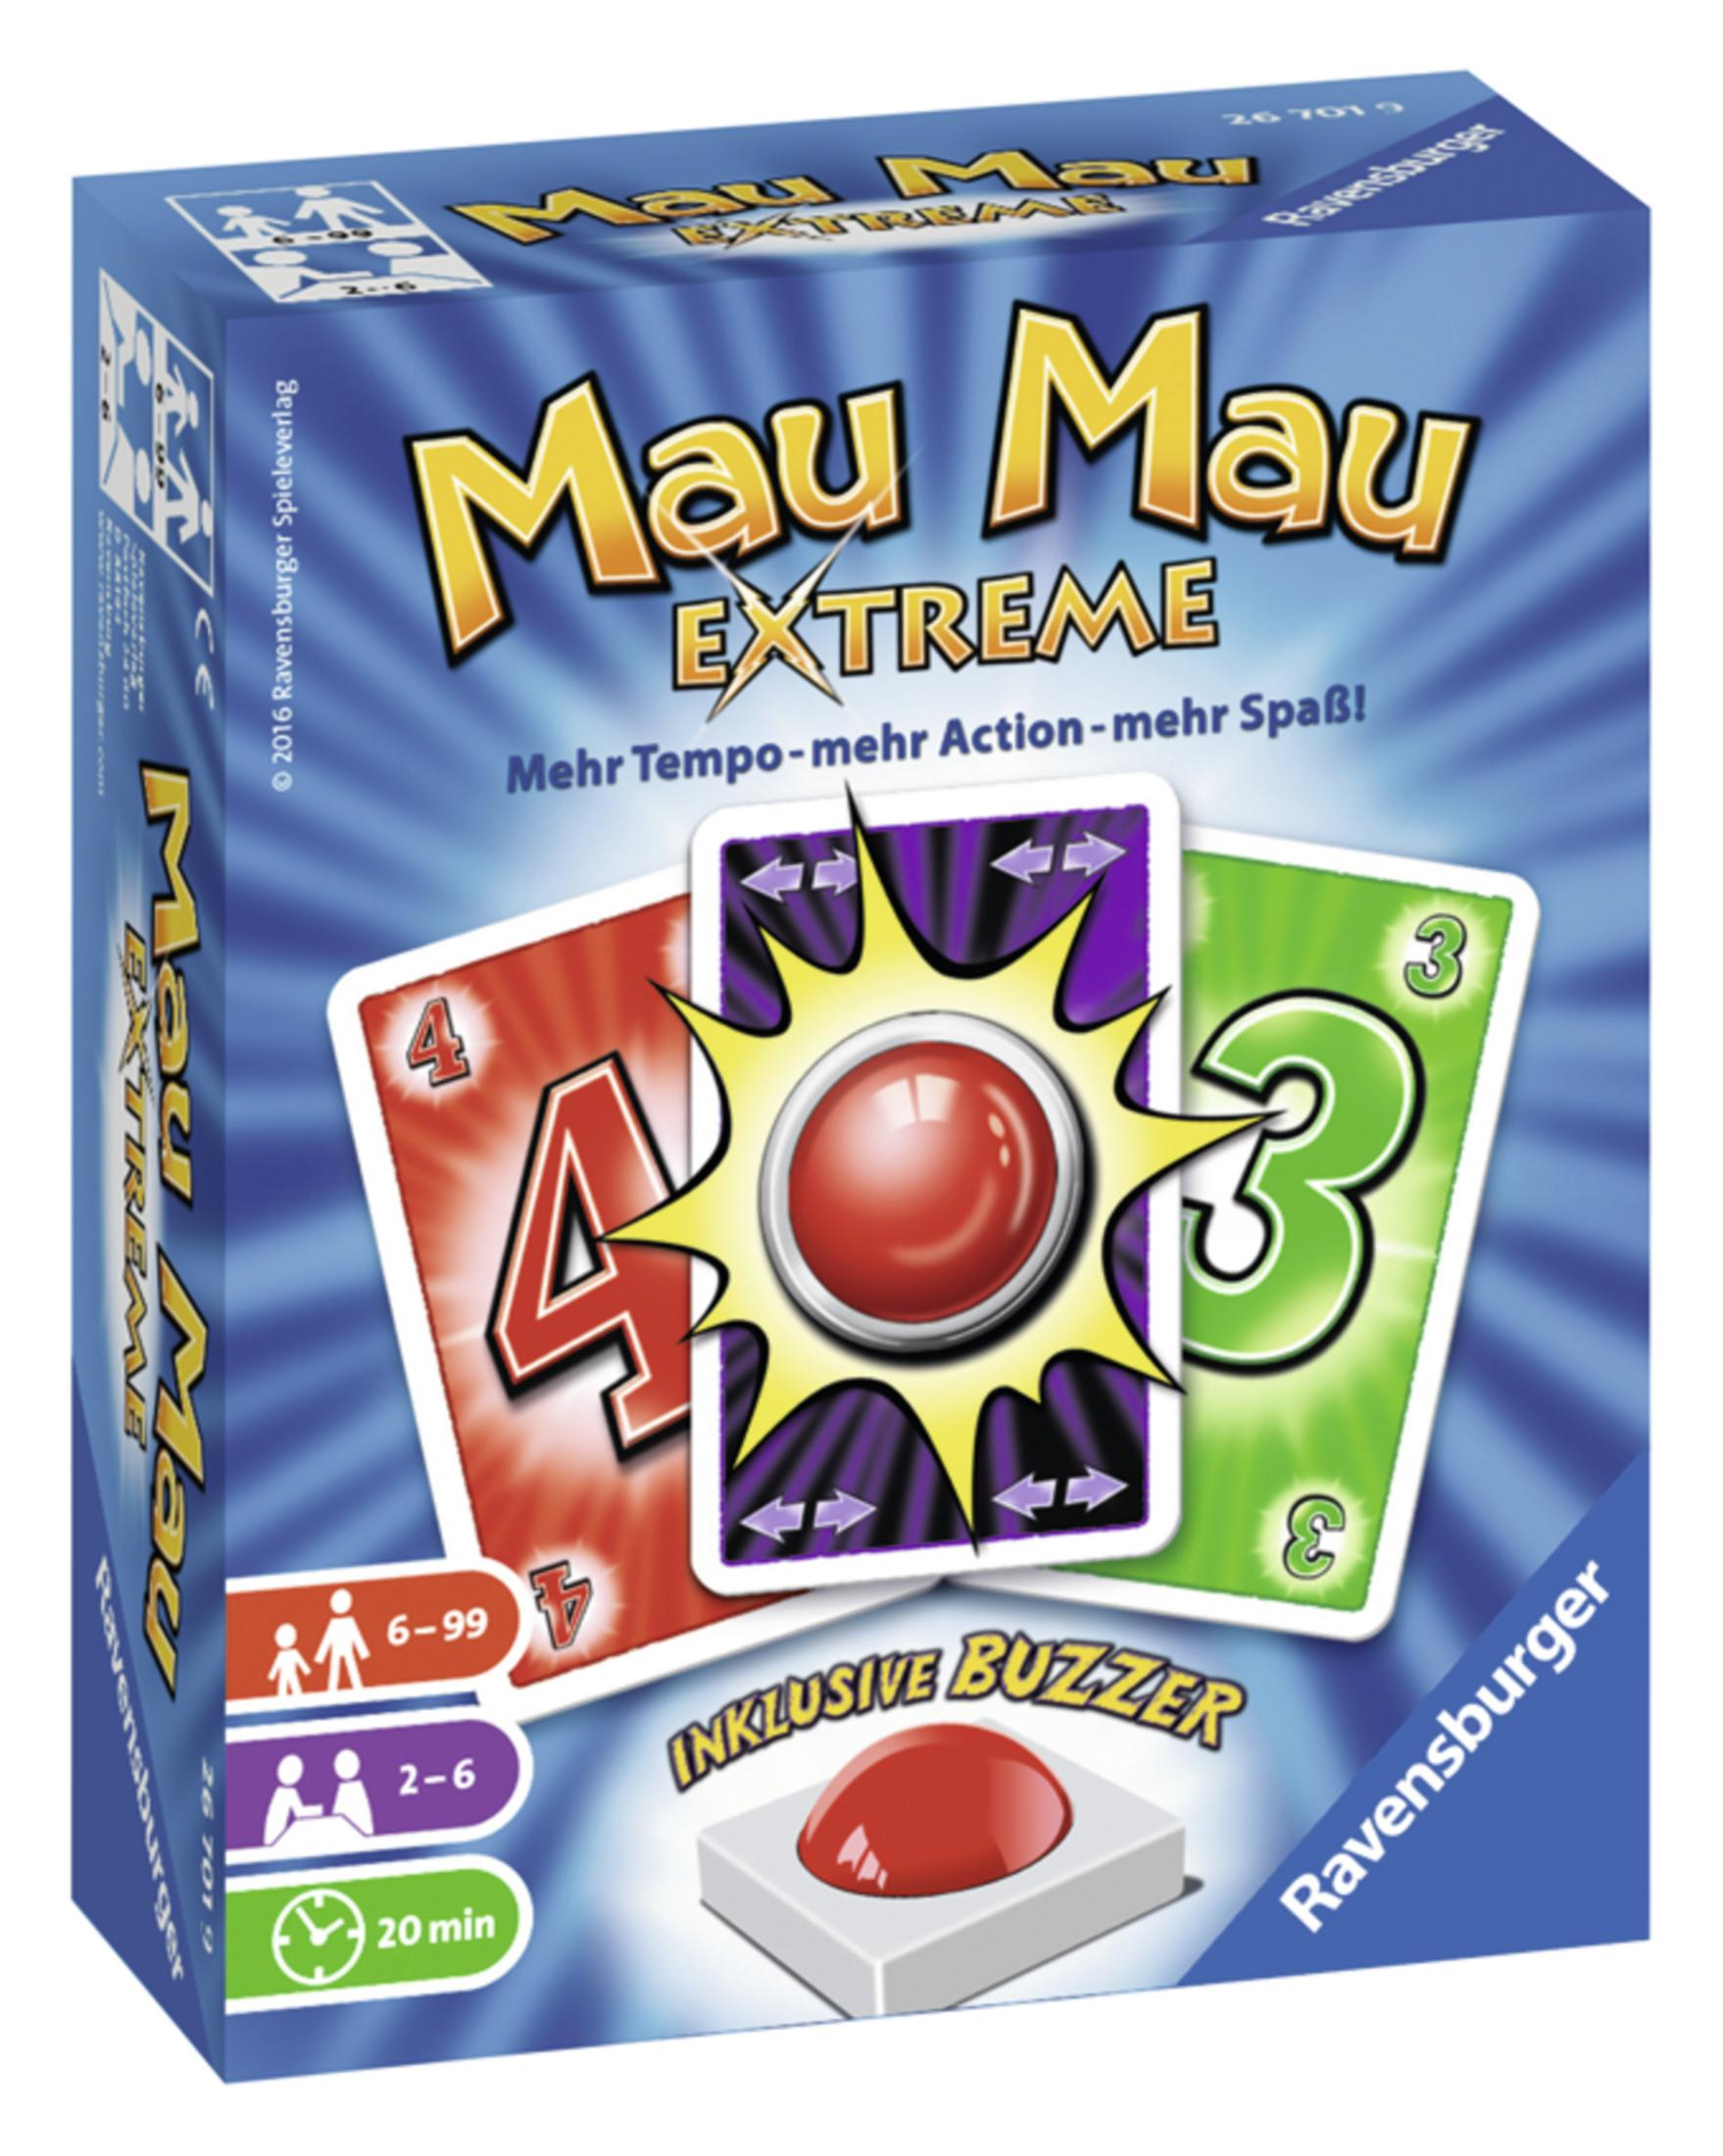 RAVENSBURGER 26701 Extreme MAU EXTREME Mau Mau MAU